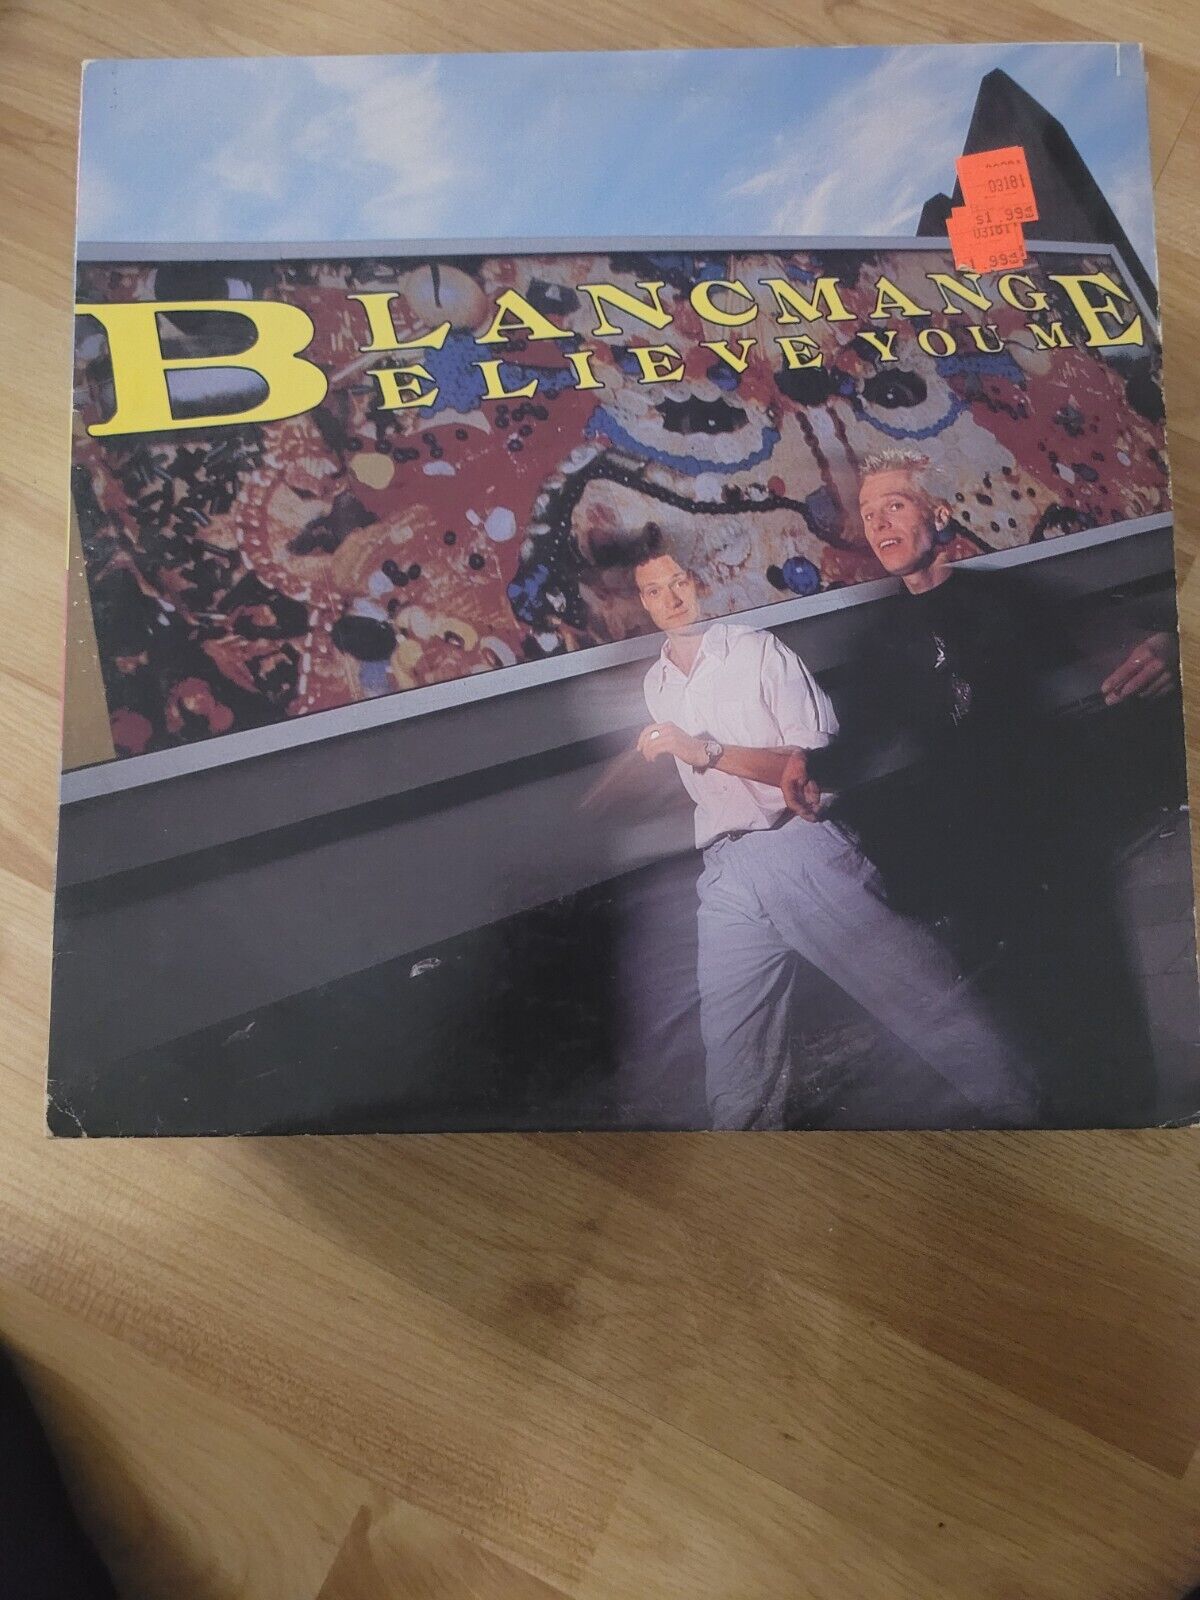 Blancmange - Believe You Me - Sire Records - Vinyl LP